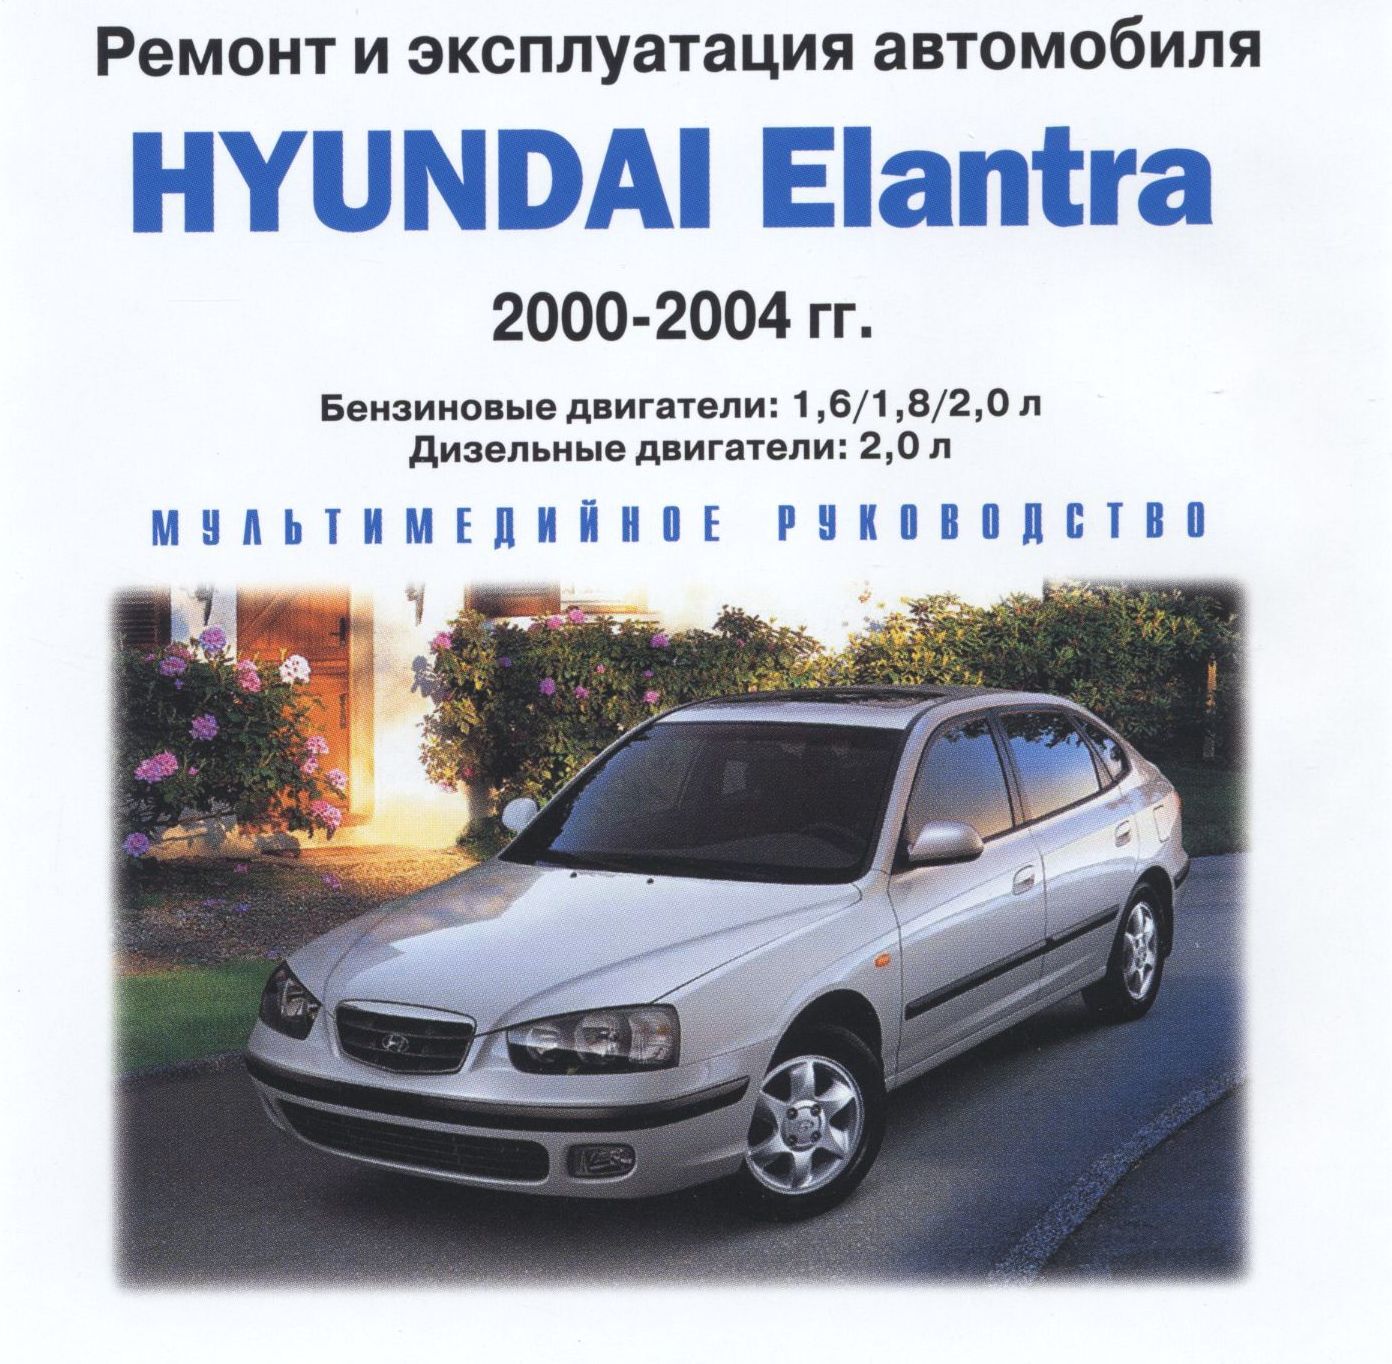 Эксплуатация и ремонт hyundai. Руководство по ремонту Hyundai Lantra g1. Руководство по эксплуатации автомобиля. Автомобильная книжка Хендай Элантра 2000г.